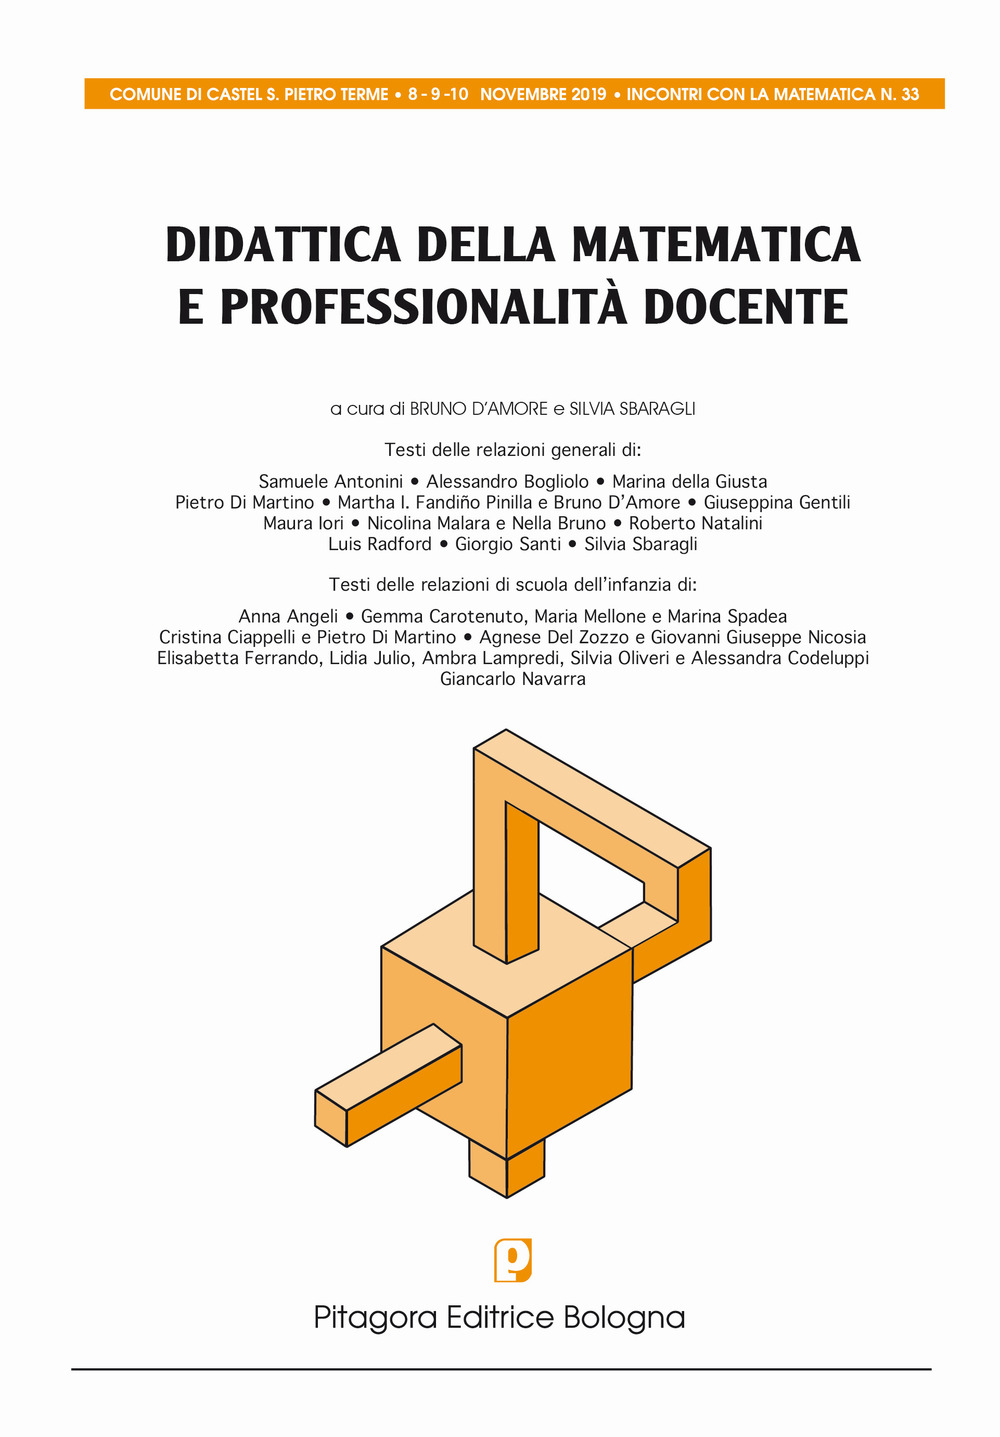 Image of Didattica della matematica e professionalità docente. Atti convegno matematica cspt. 2019